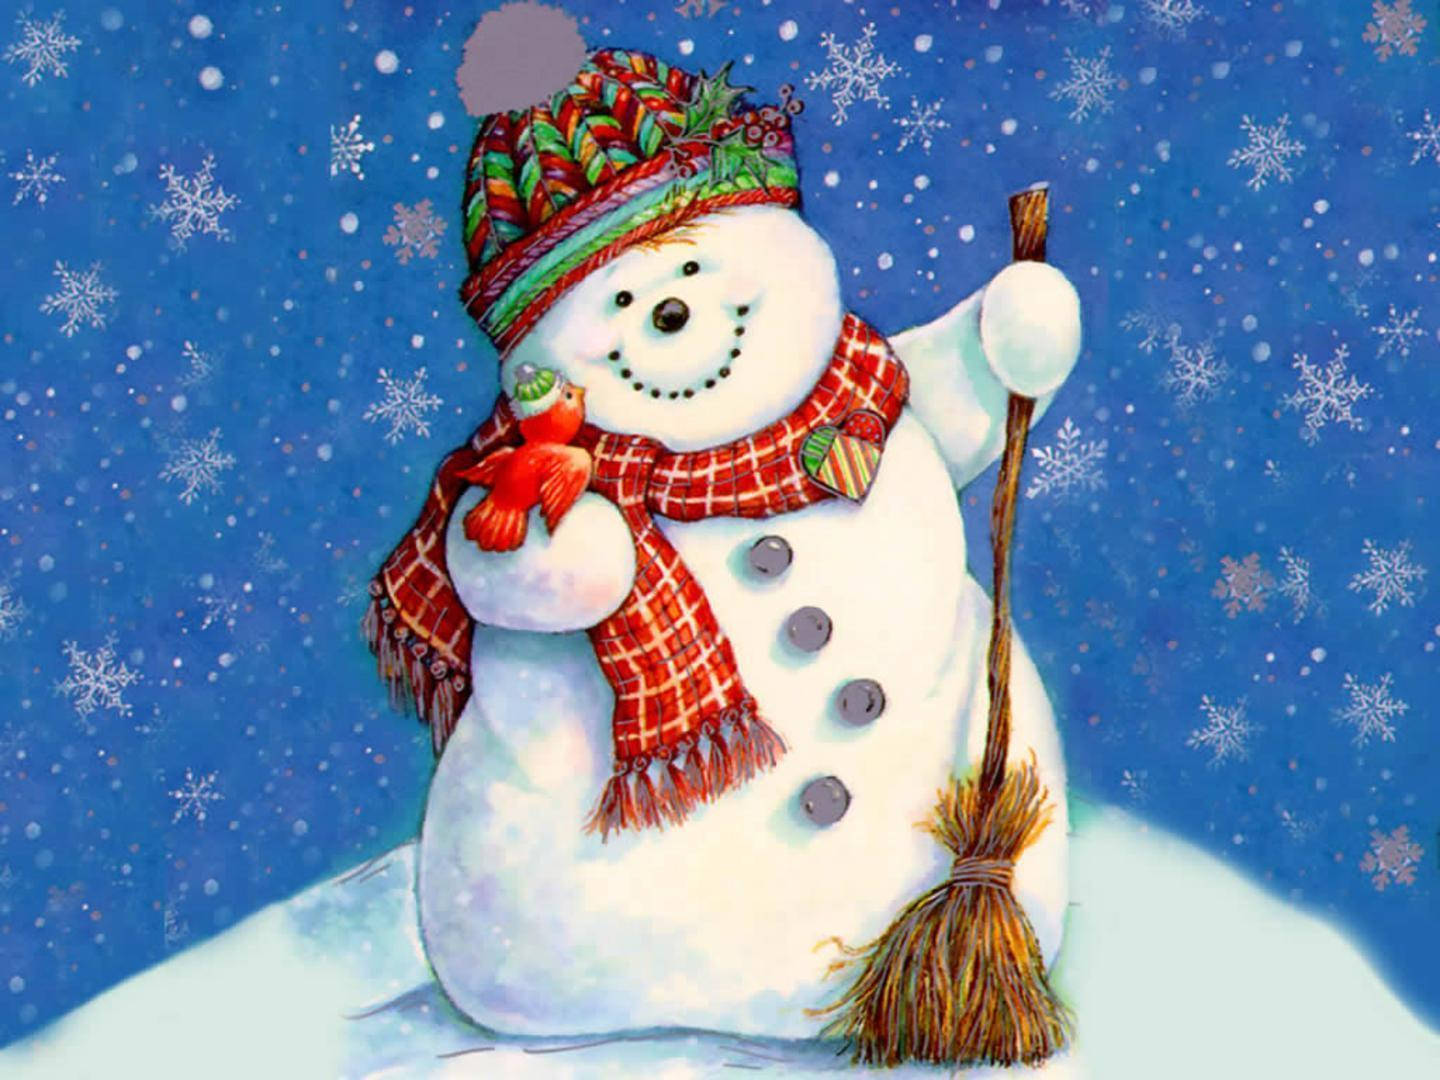 Smiling Snowman In Winter Wonderland Background